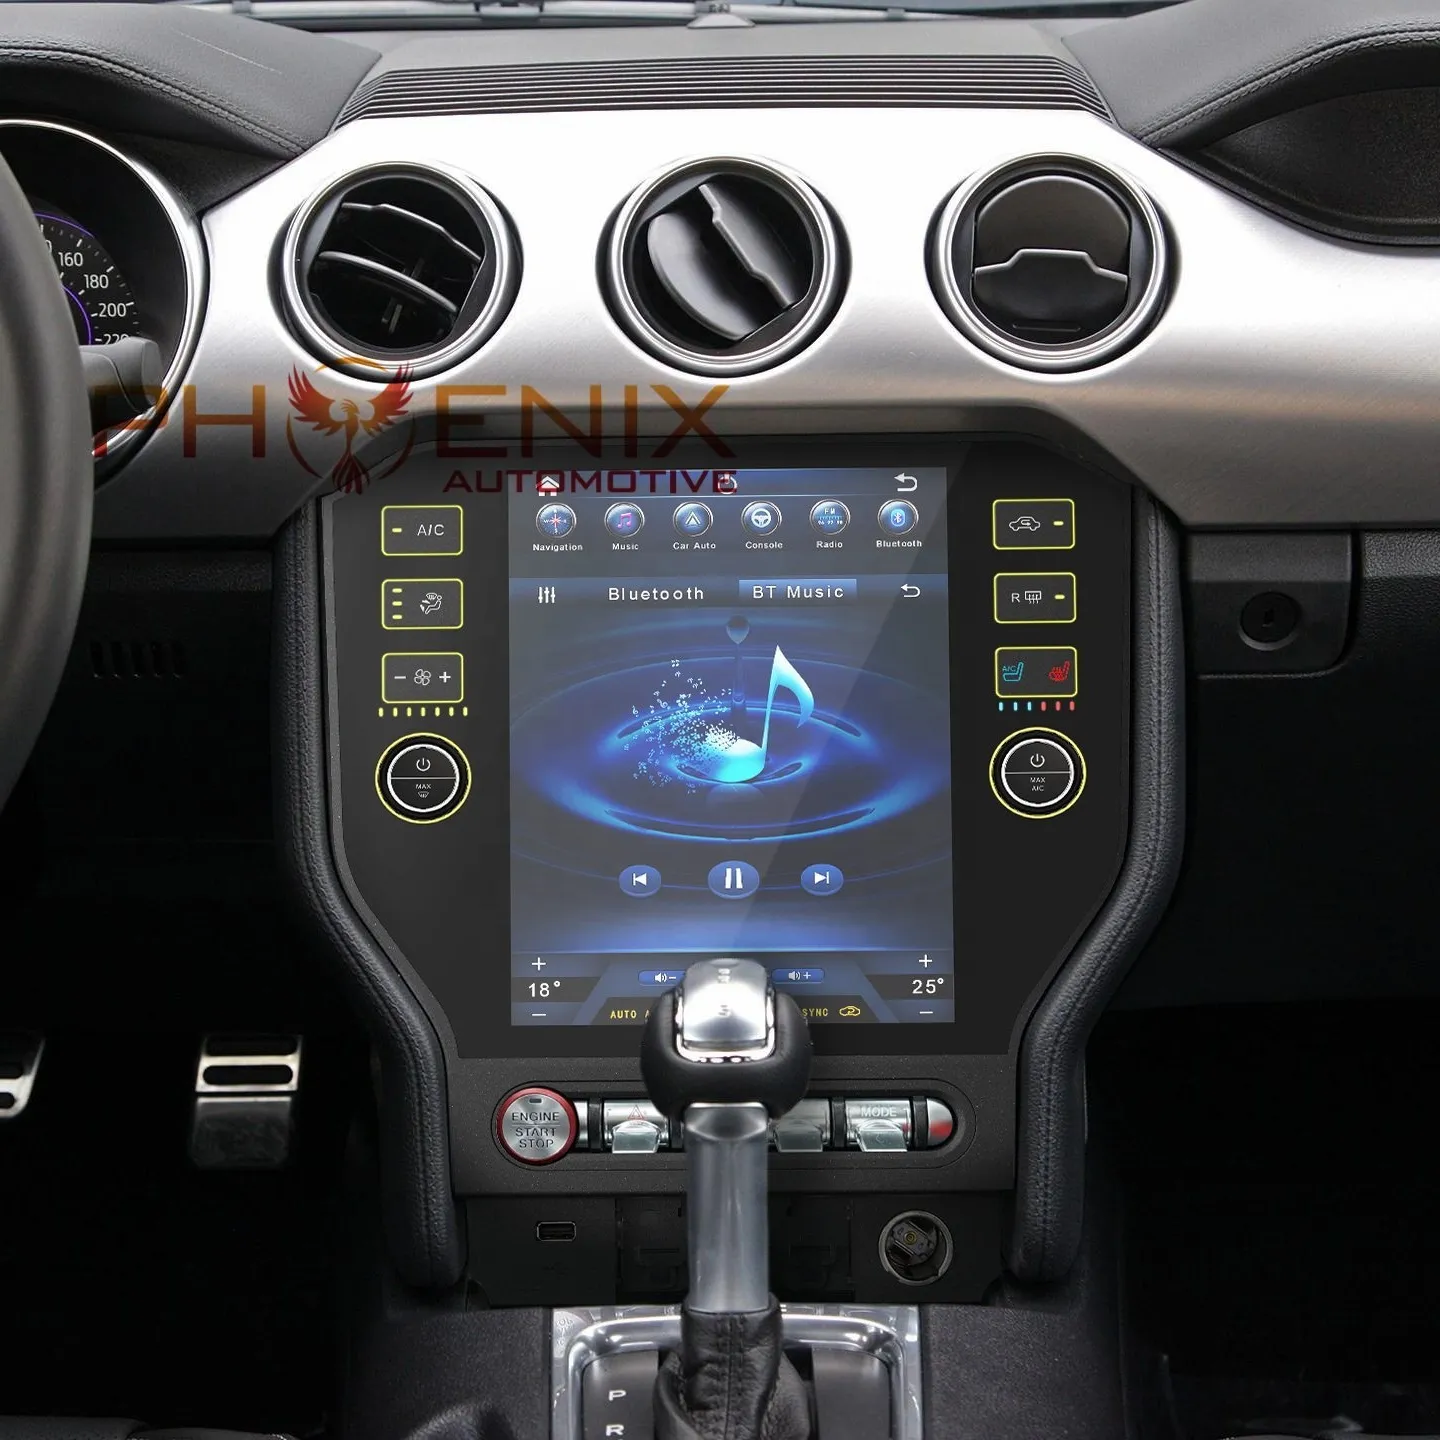 PA 10.4 "Android 10.0 Màn Hình Dọc Xe Gps Navigation Cho Ford Mustang 2015 - 2020 Đài Phát Thanh Xe Hơi